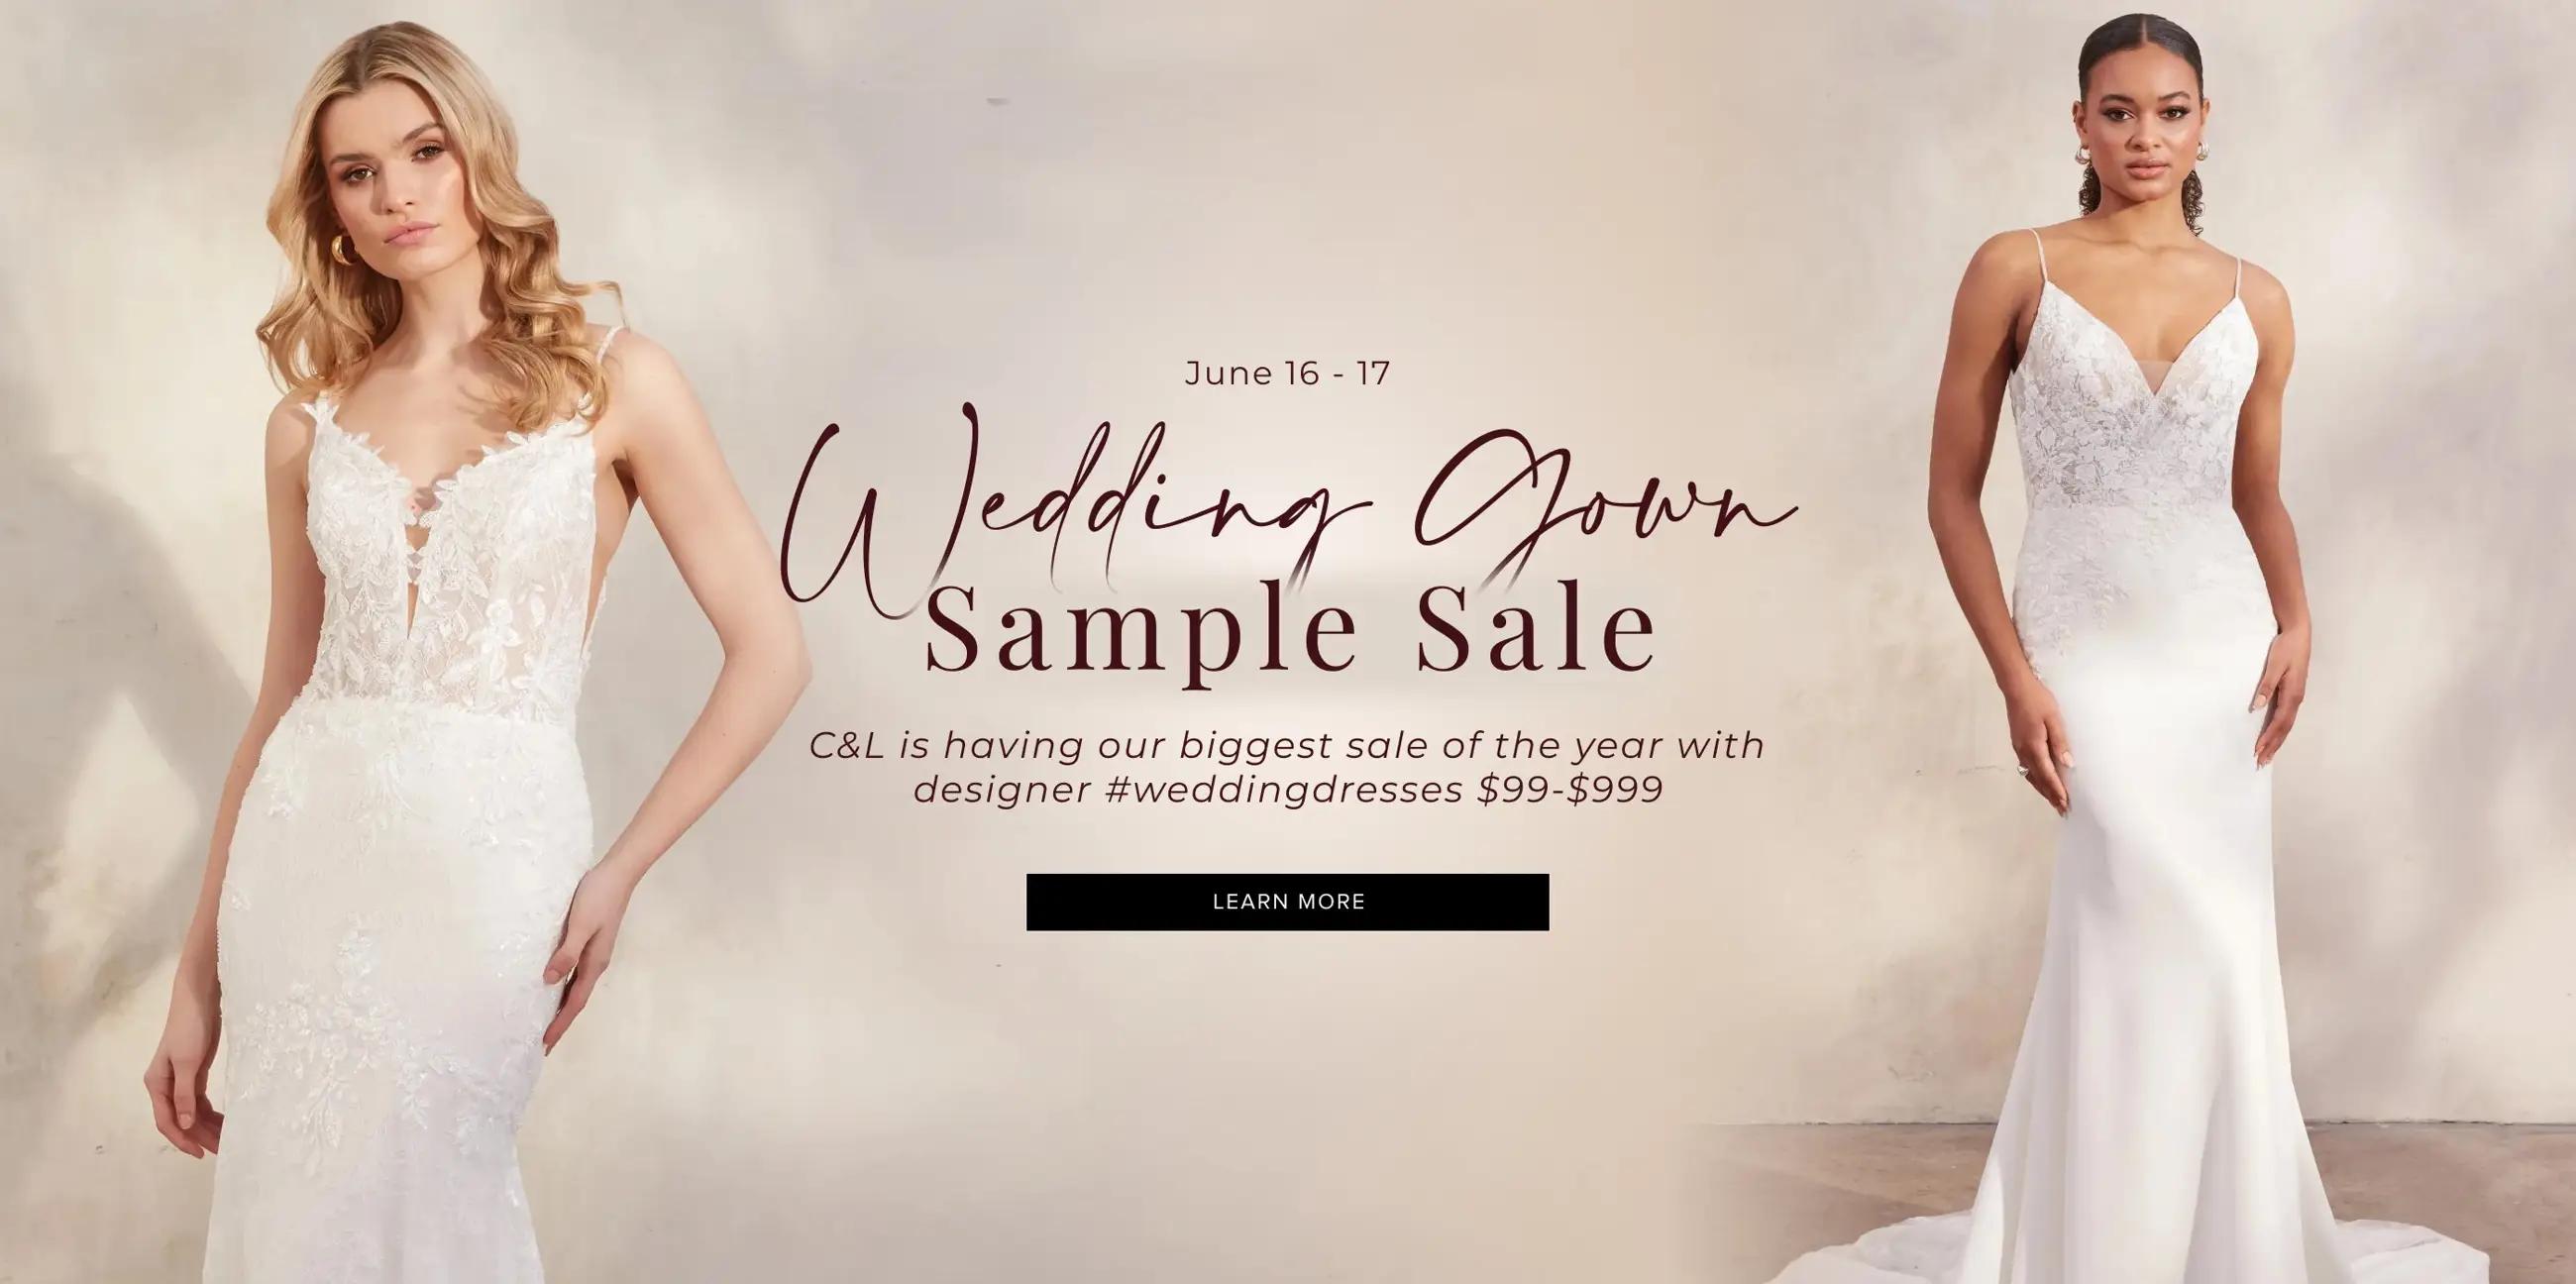 "Wedding Gown Sample Sale" banner for desktop